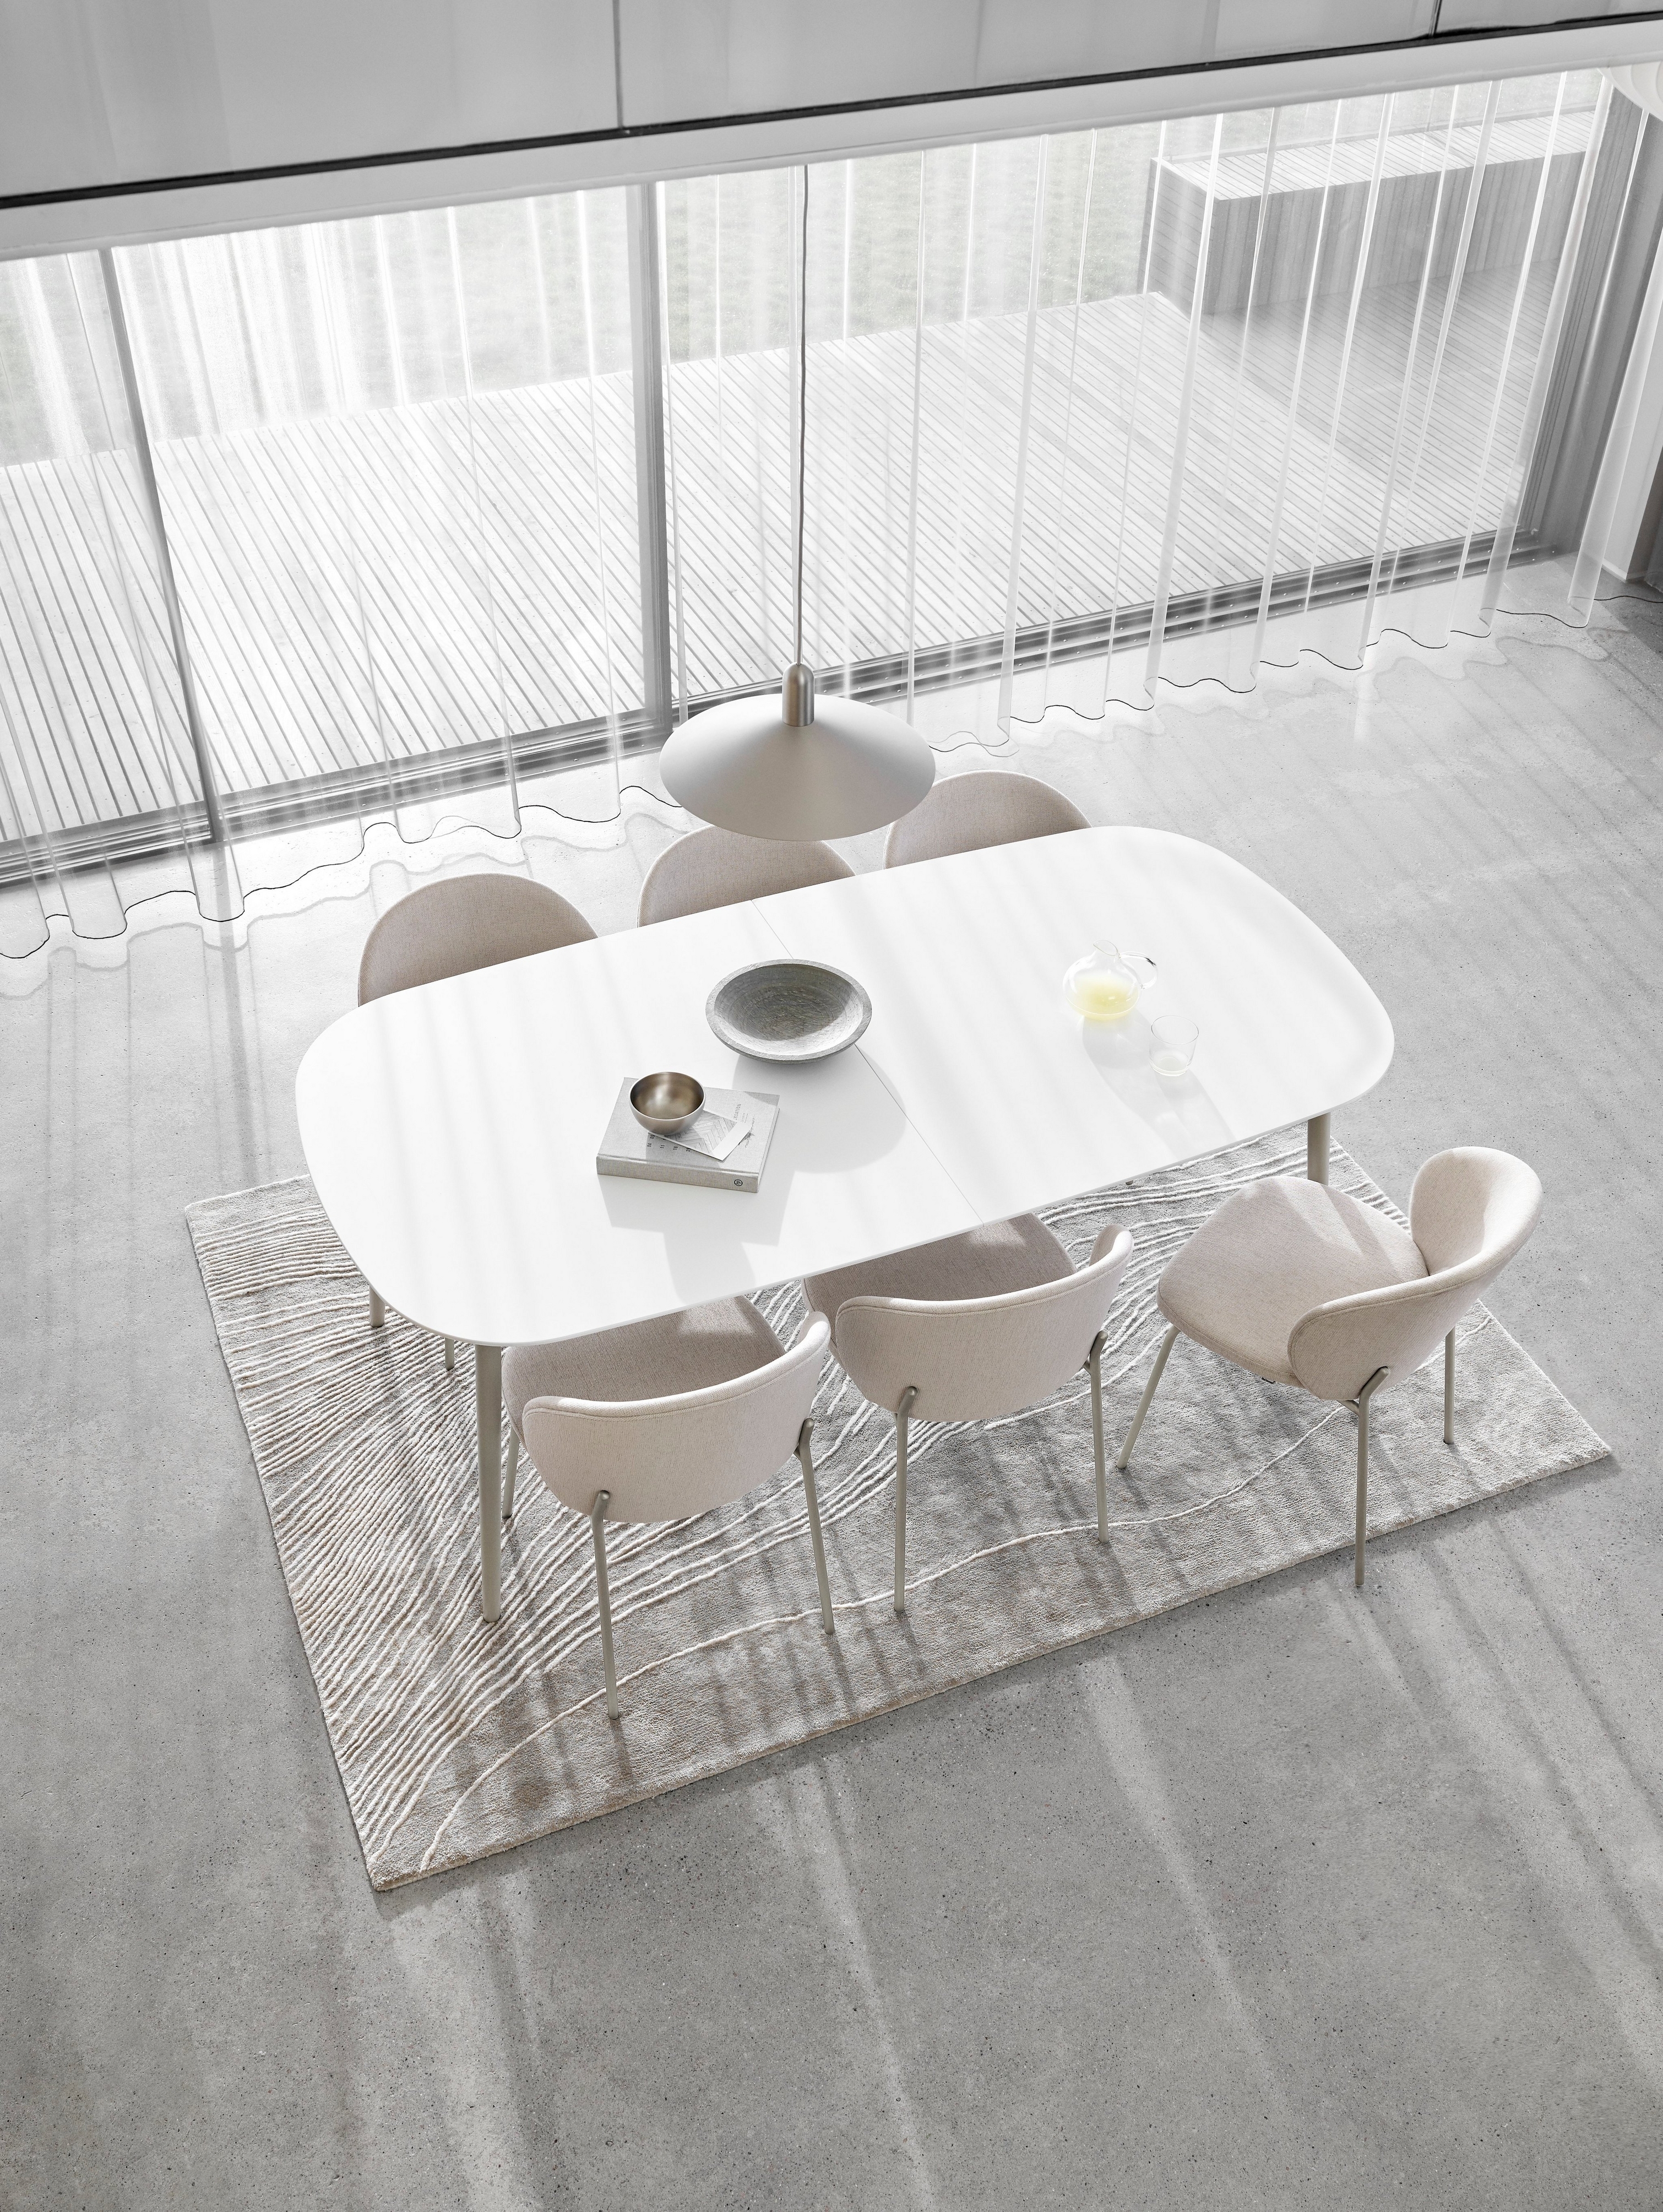 Minimalistisk spiseområde med hvidt ovalt bord, stole, transparente gardiner og tæppe med struktur.